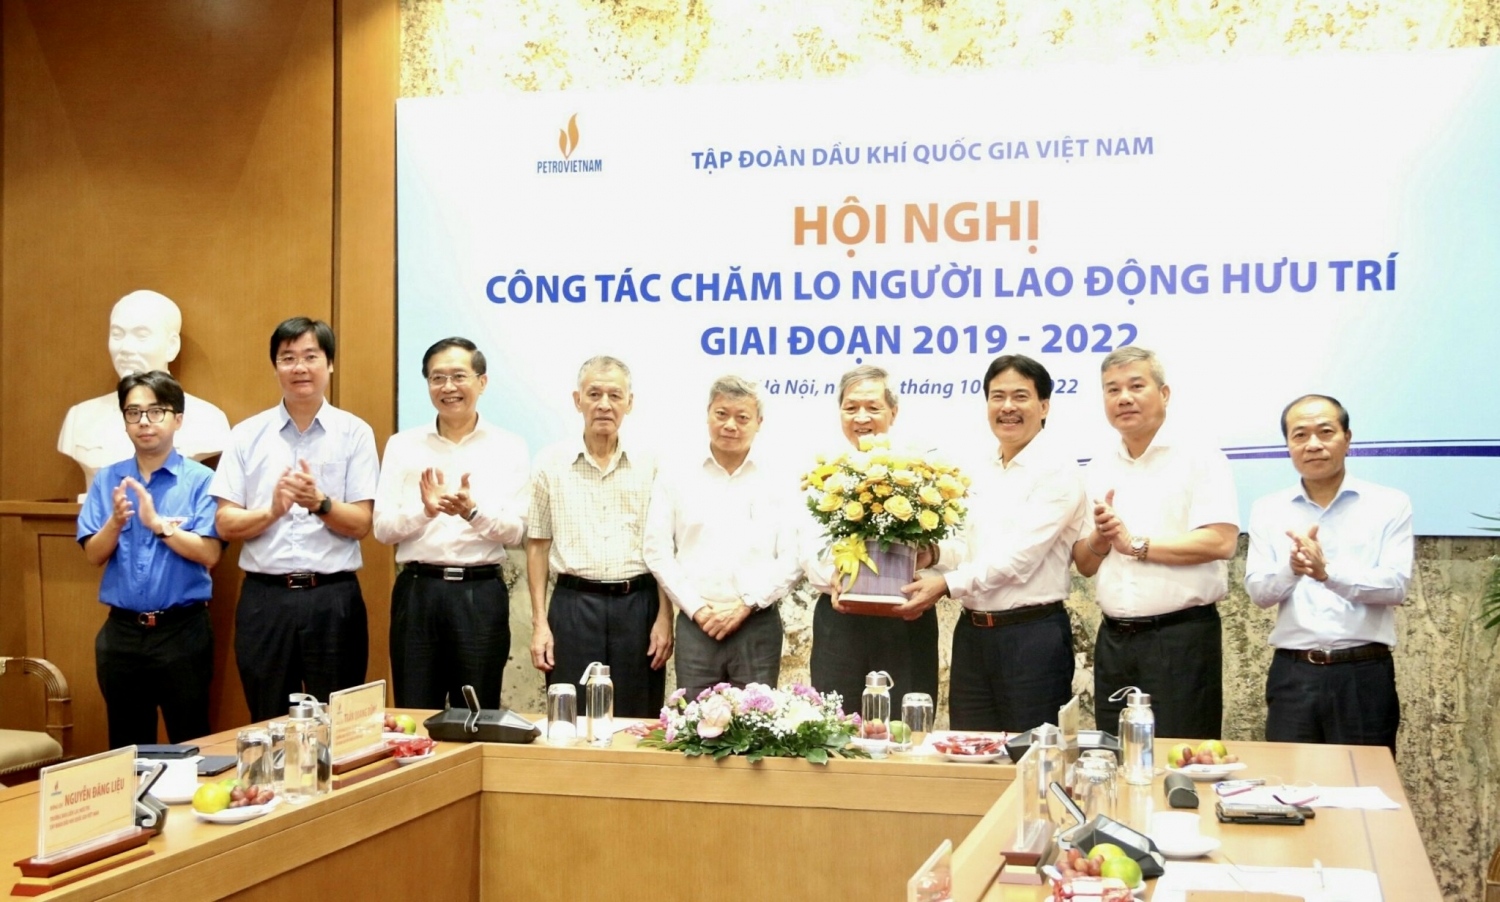 Lãnh đạo Petrovietnam tặng hoa chúc mừng các đồng chí trong Ban LLHT Tập đoàn, đại diện cán bộ hưu trí nhân hưởng ứng “Tháng hành động vì người cao tuổi Việt Nam” năm 2022